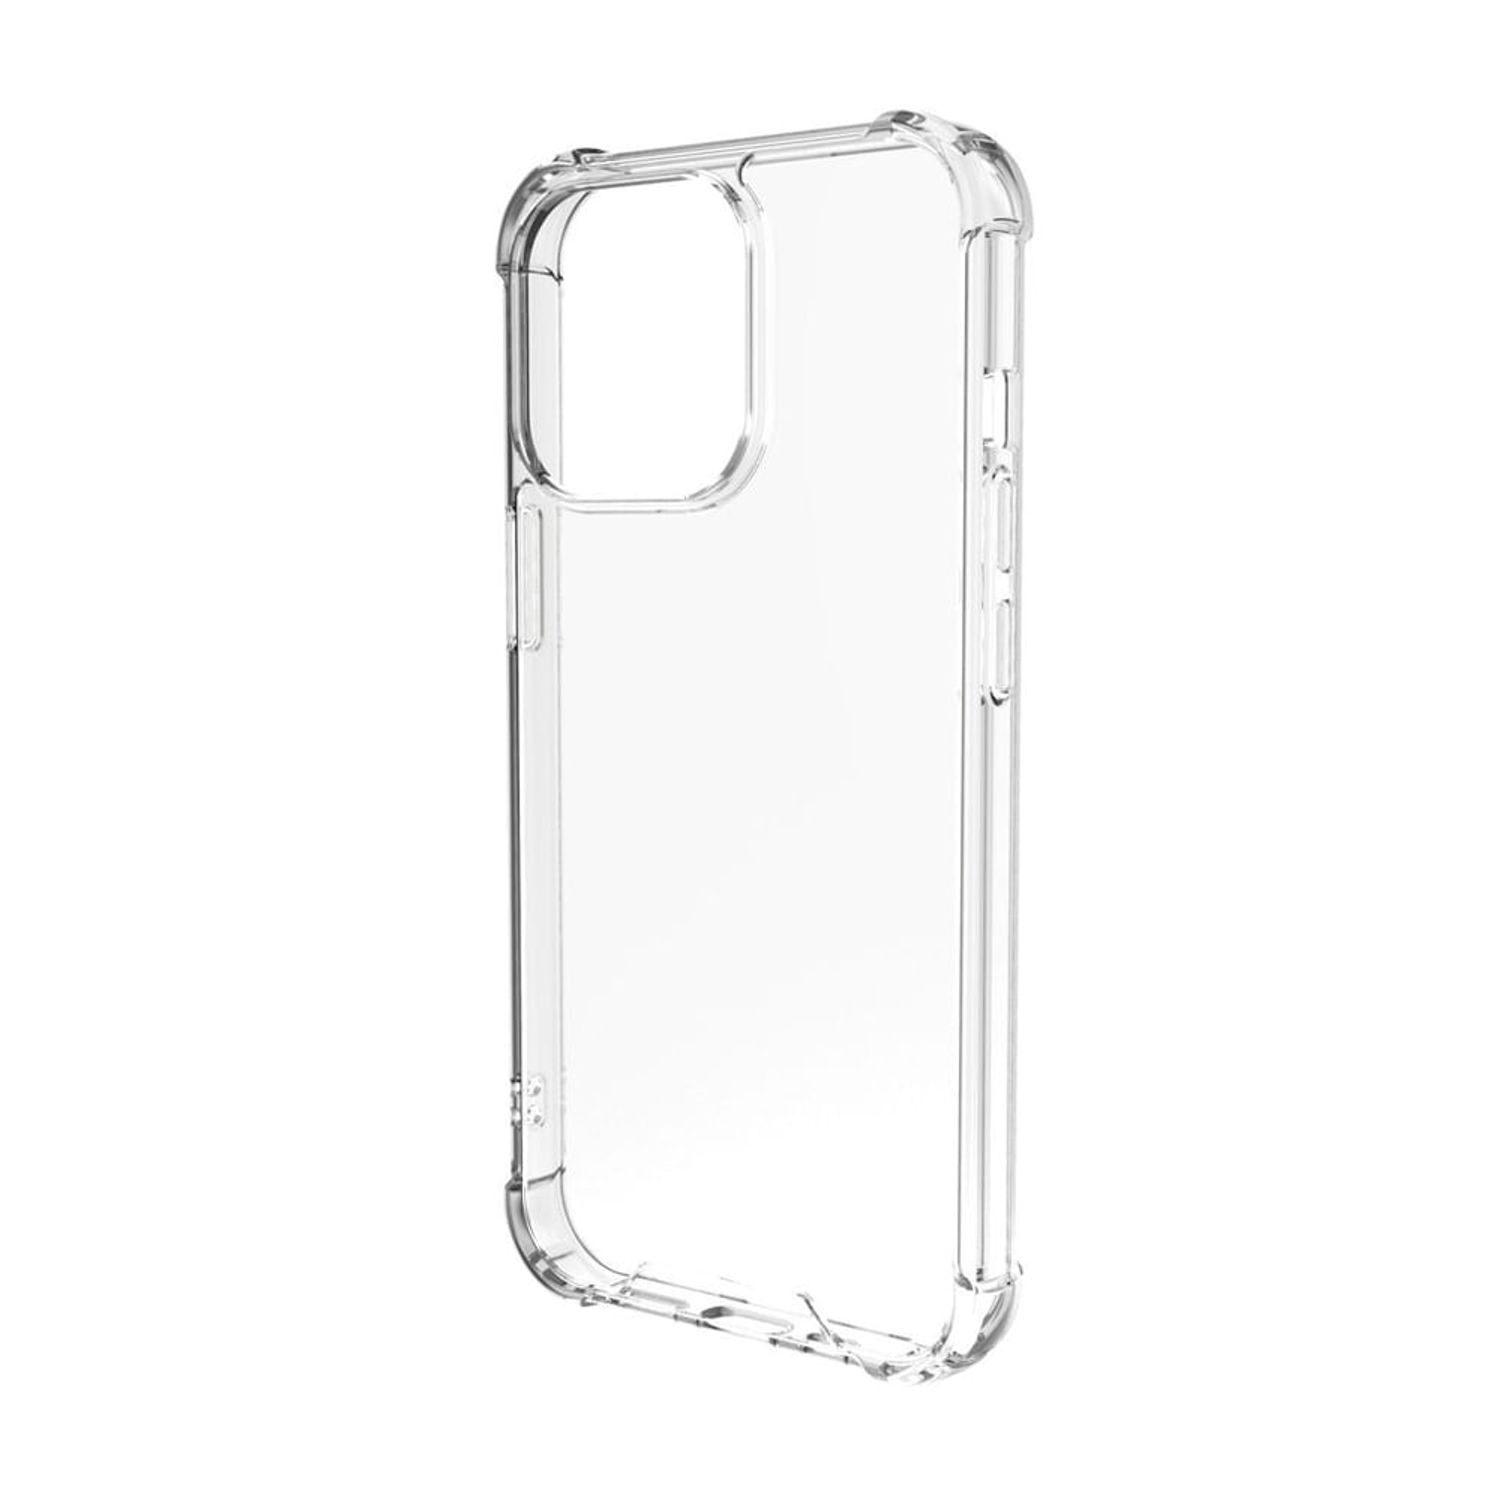 Spigen Ultra Hybrid [tecnología antiamarillamiento] funda para iPhone 13  Pro Max (2021), cristal transparente